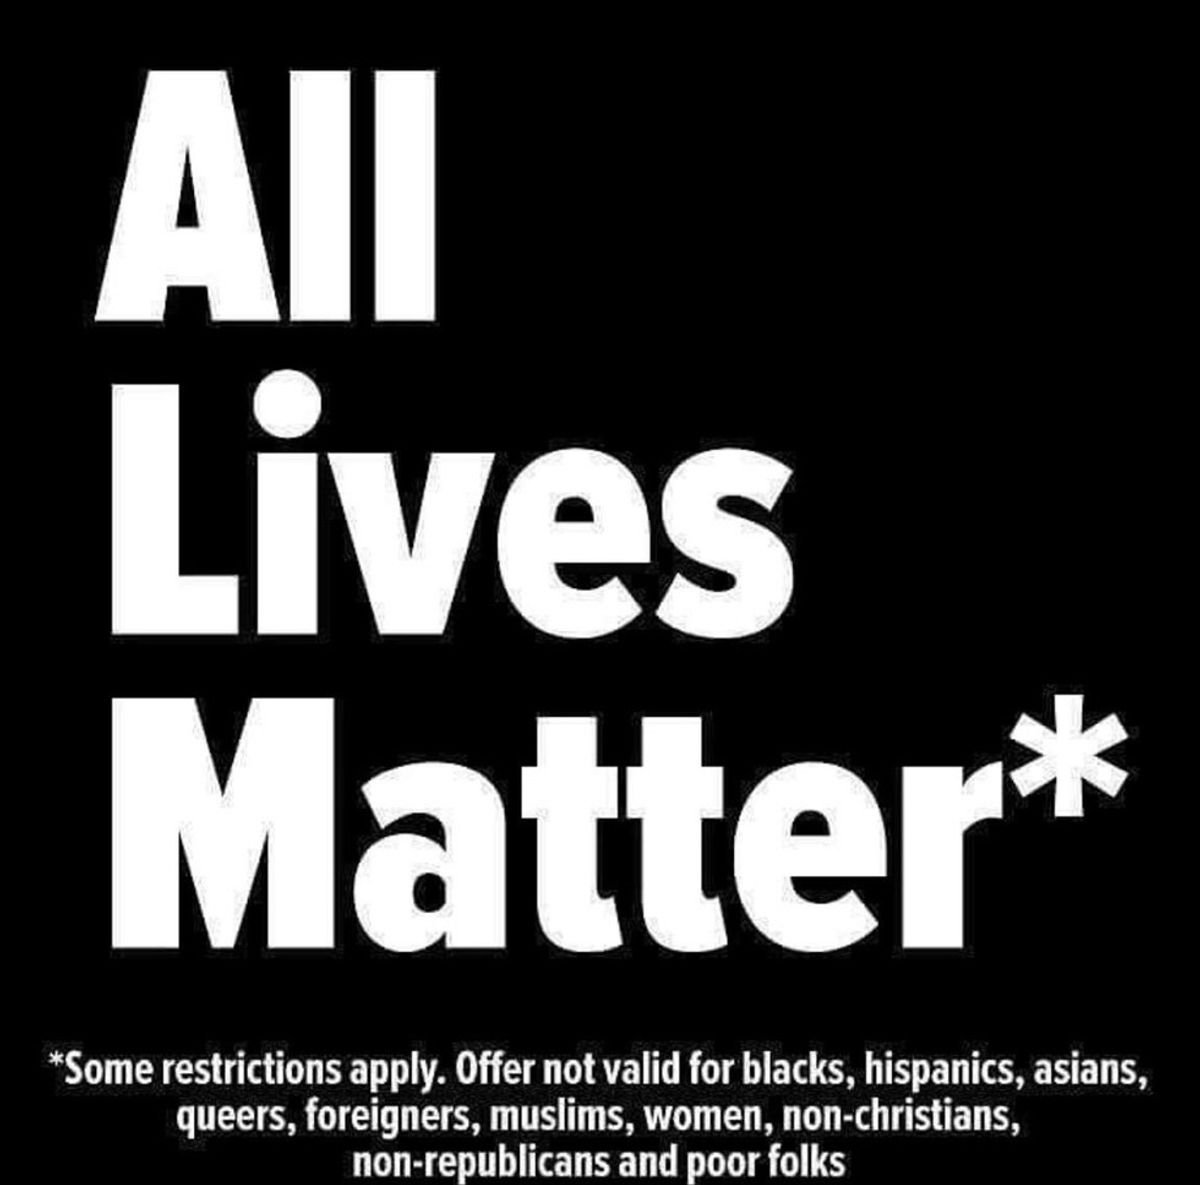 Do All Lives Really Matter?